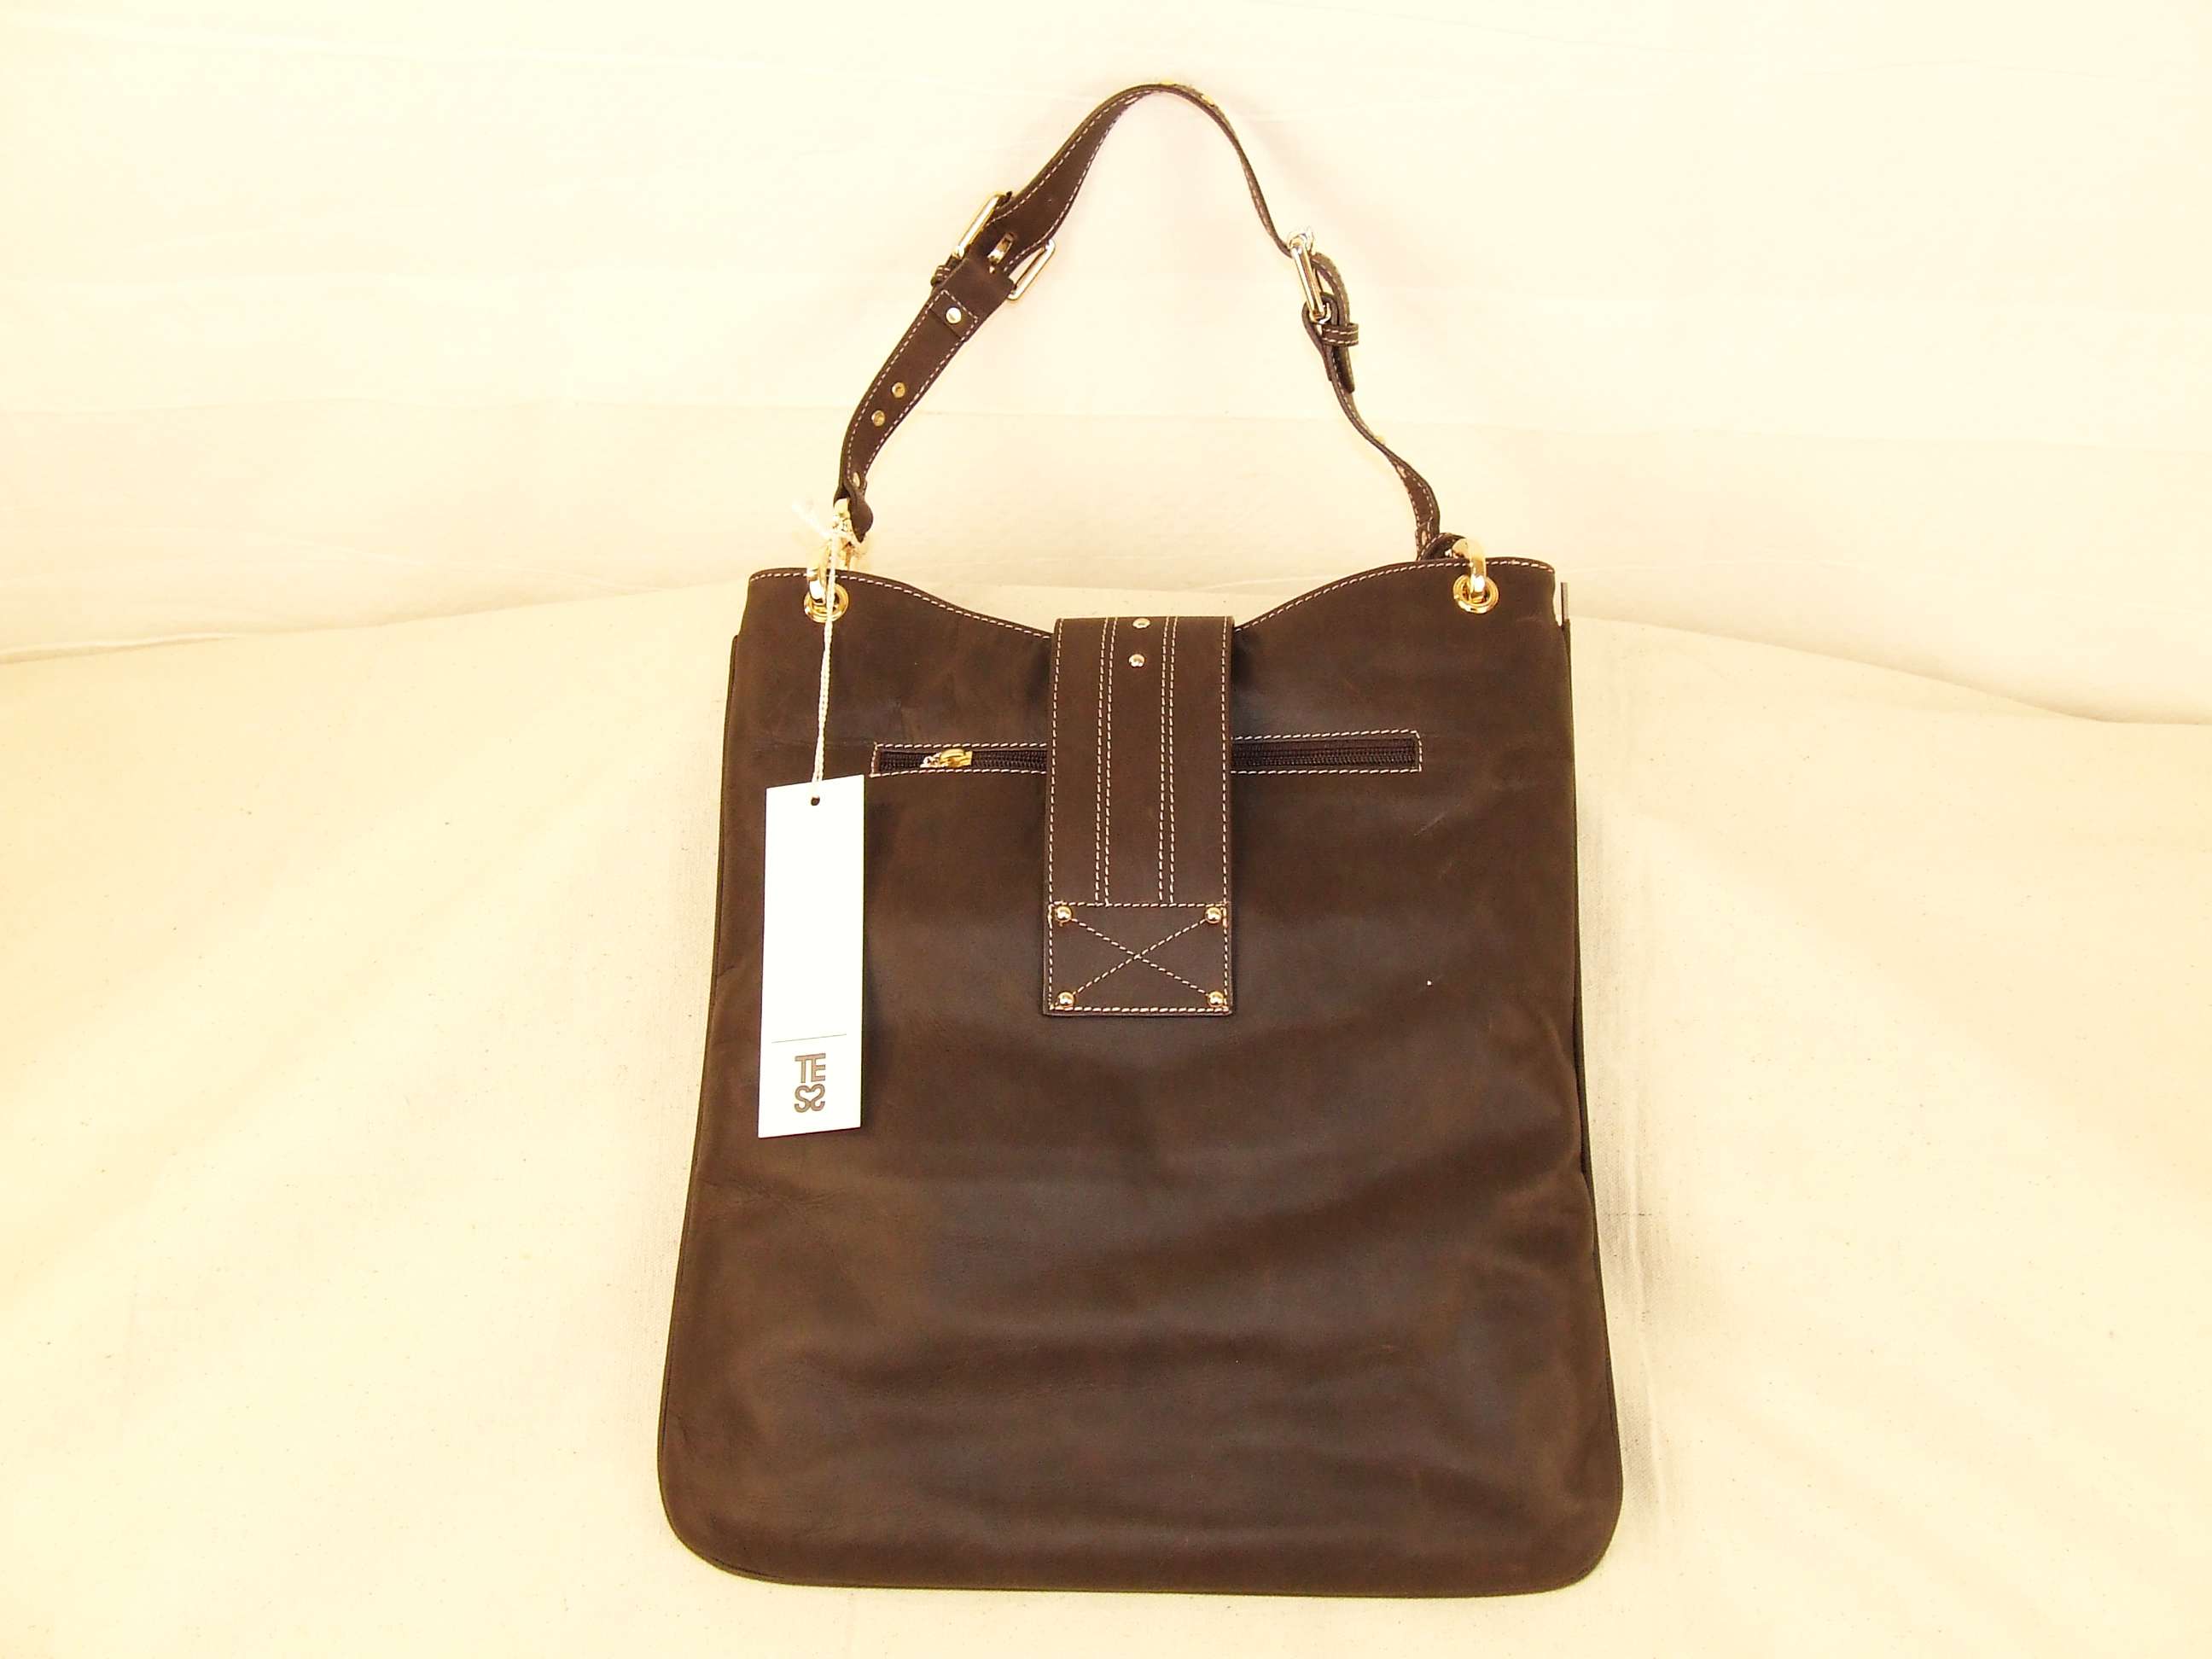 Best Italian Leather Bags Brands | SEMA Data Co-op